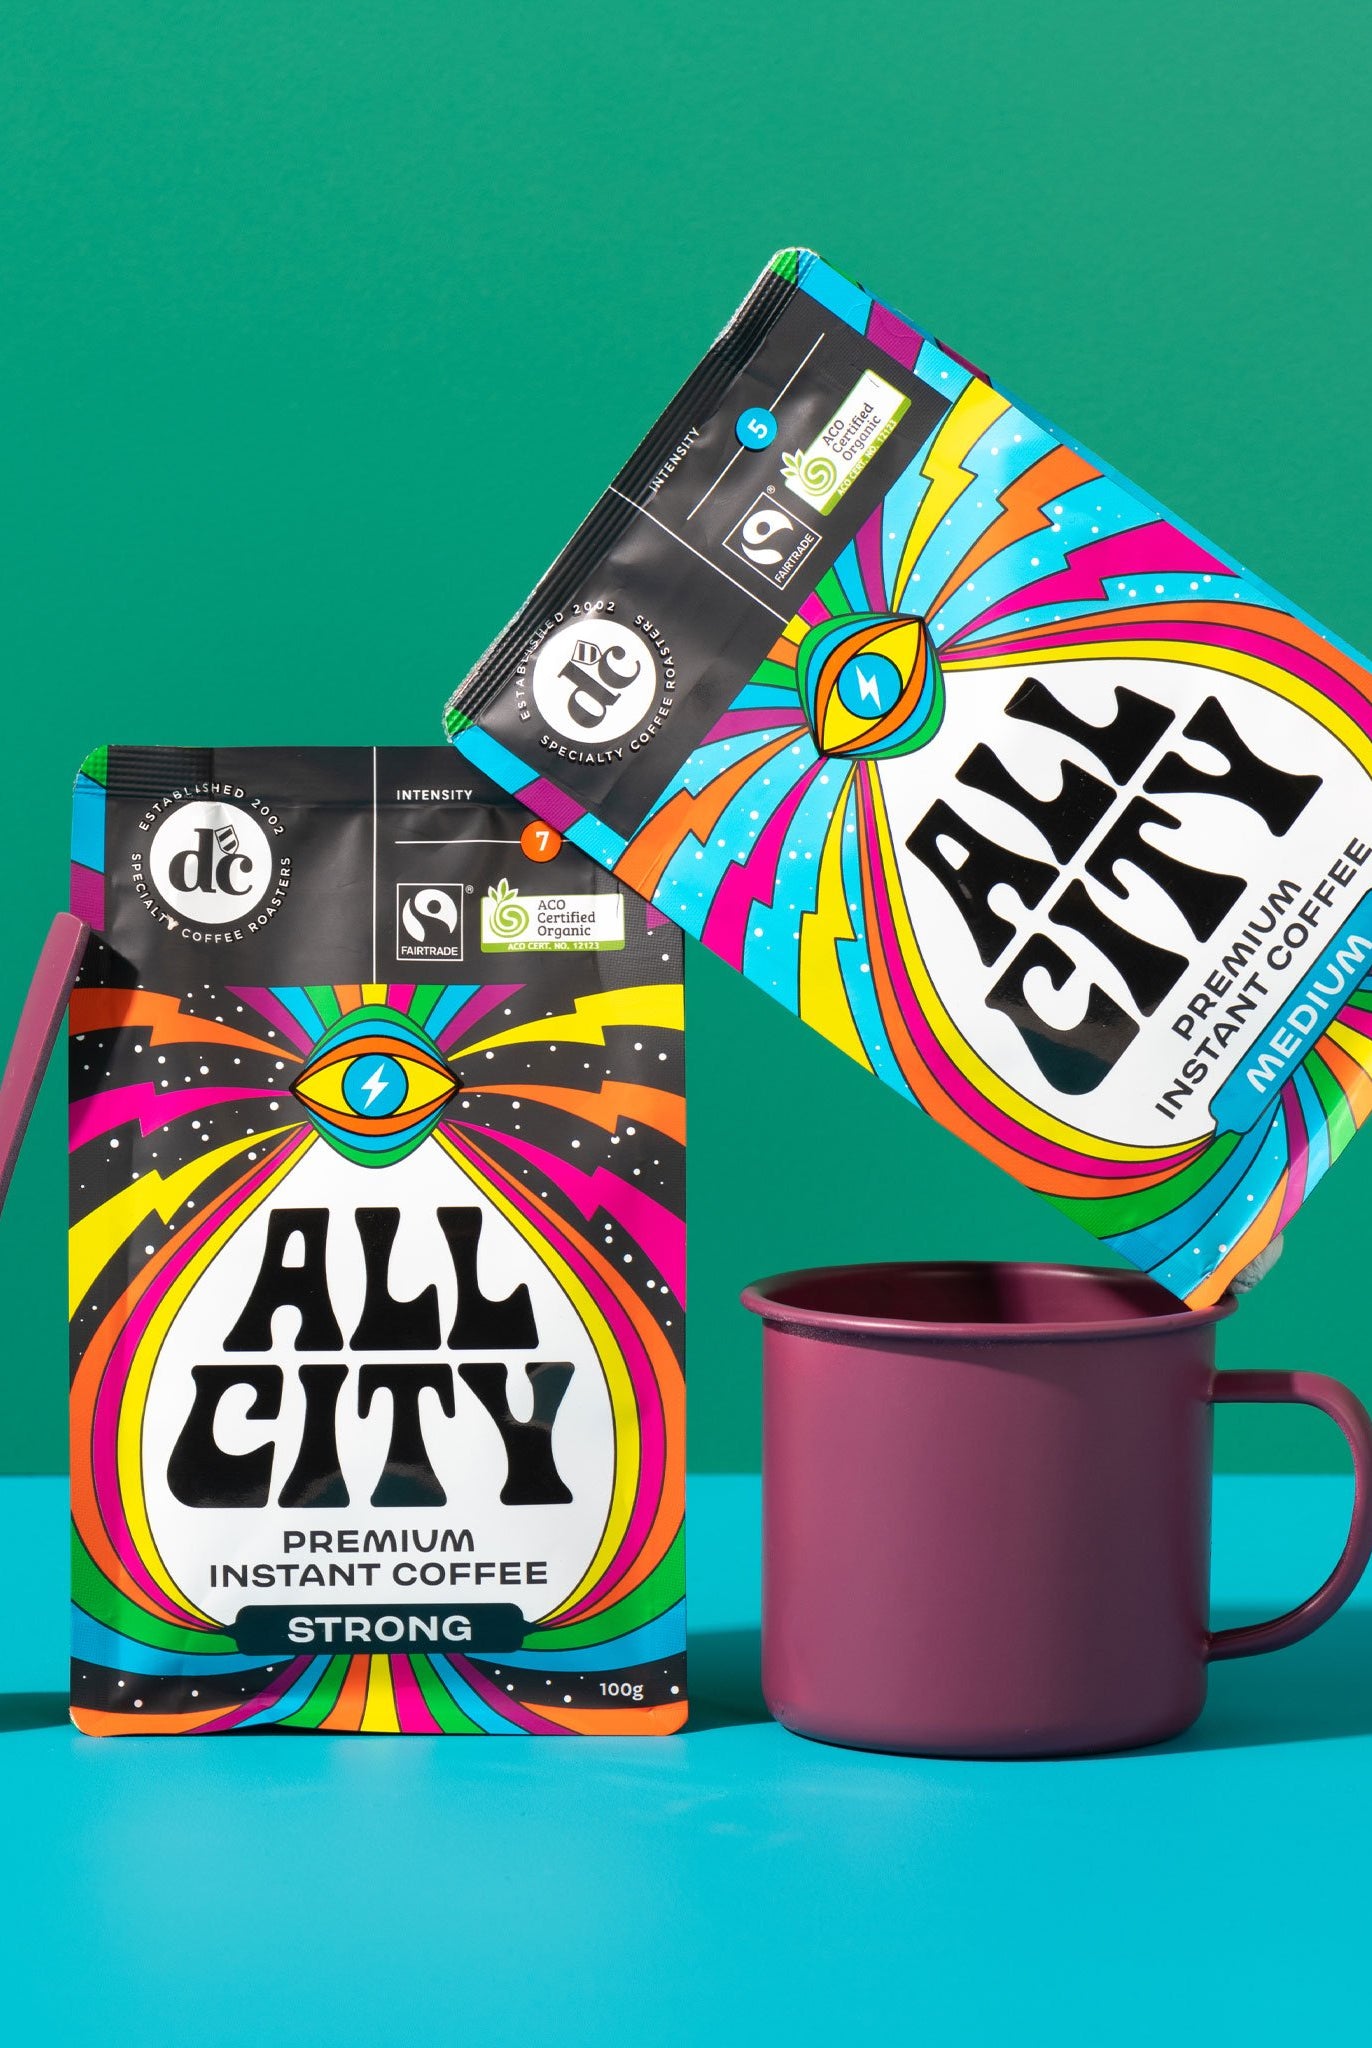 AllCity Premium Instant Medium - DC Specialty Coffee